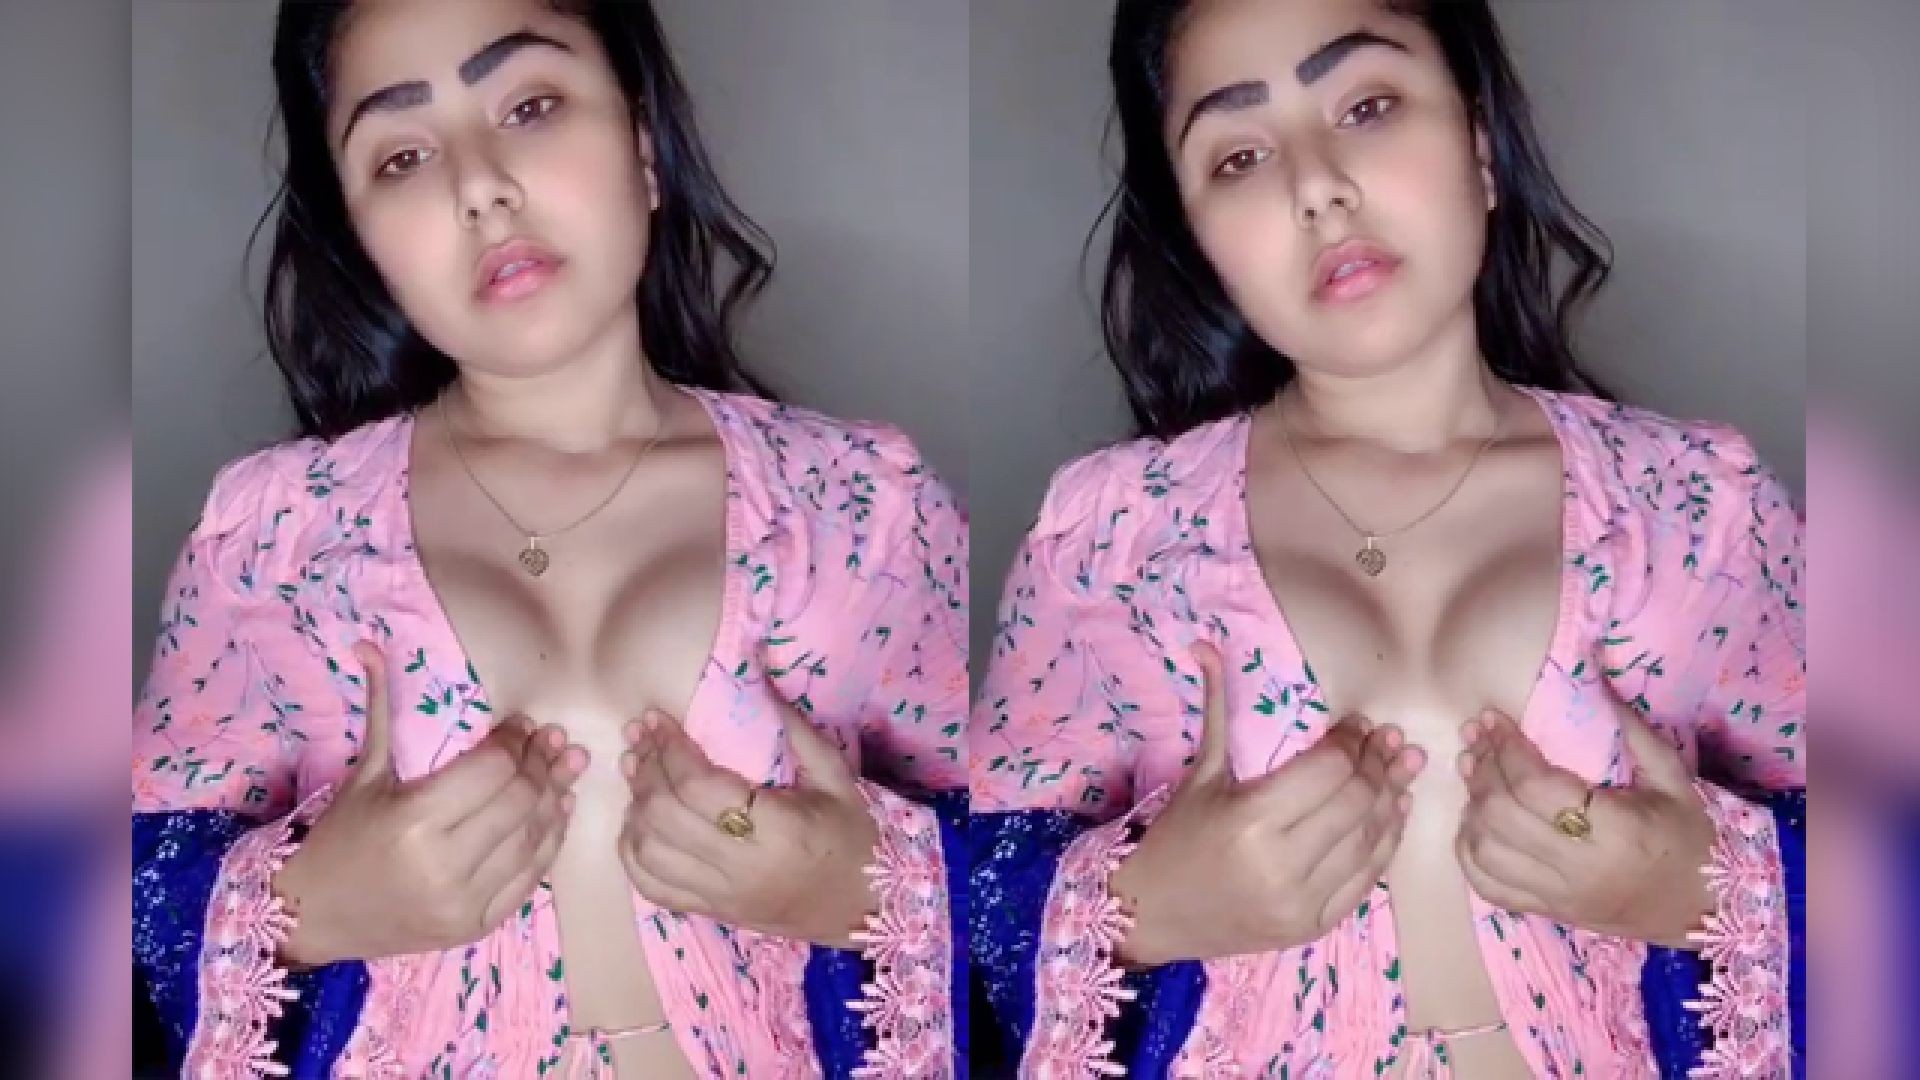 Indian teen girl showing boobs